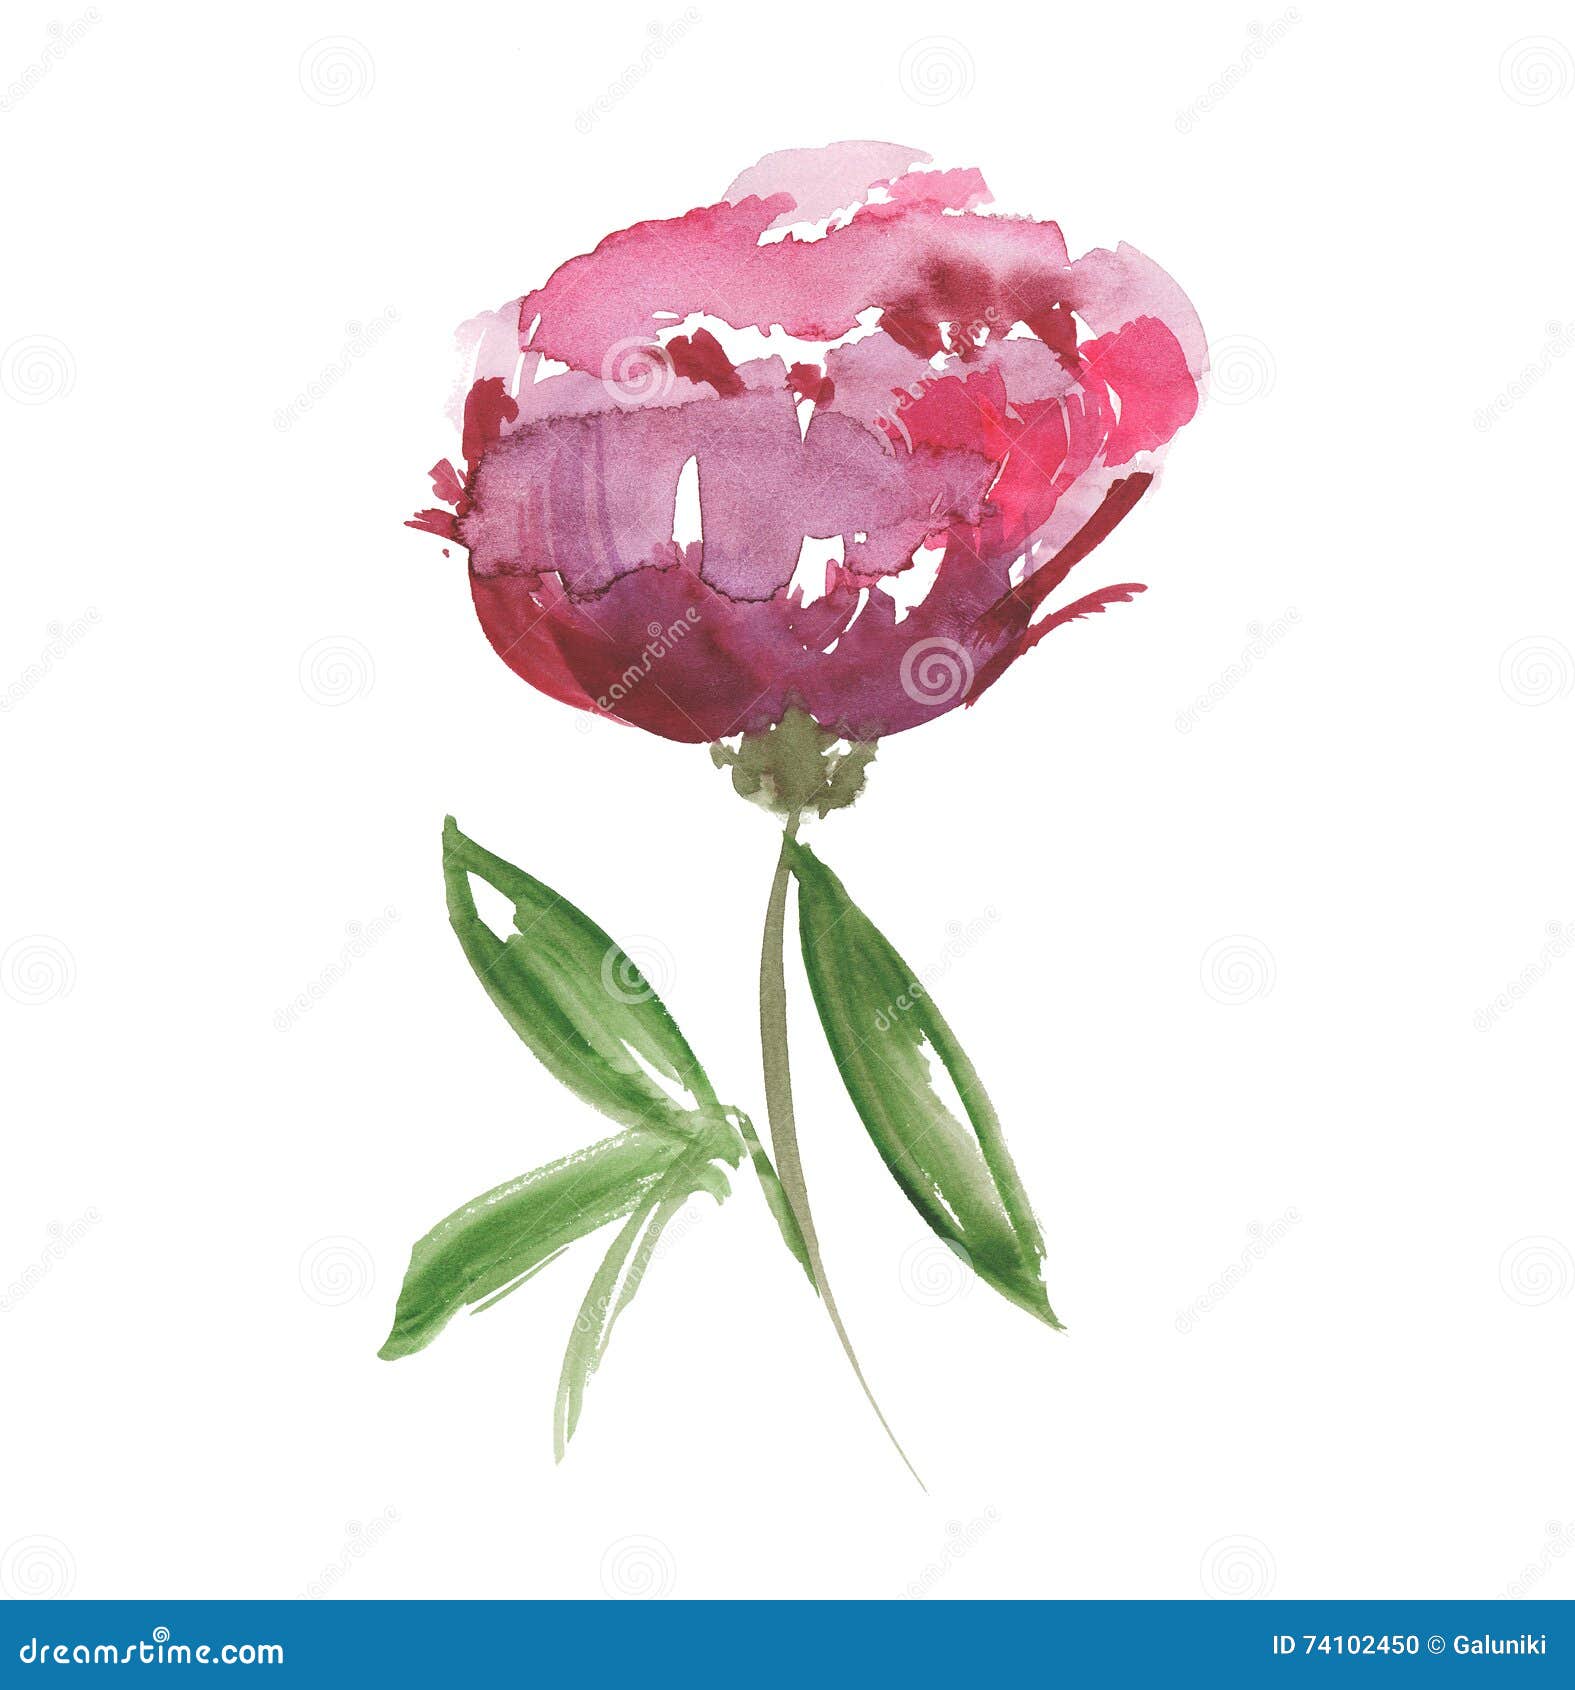 pink peon flower